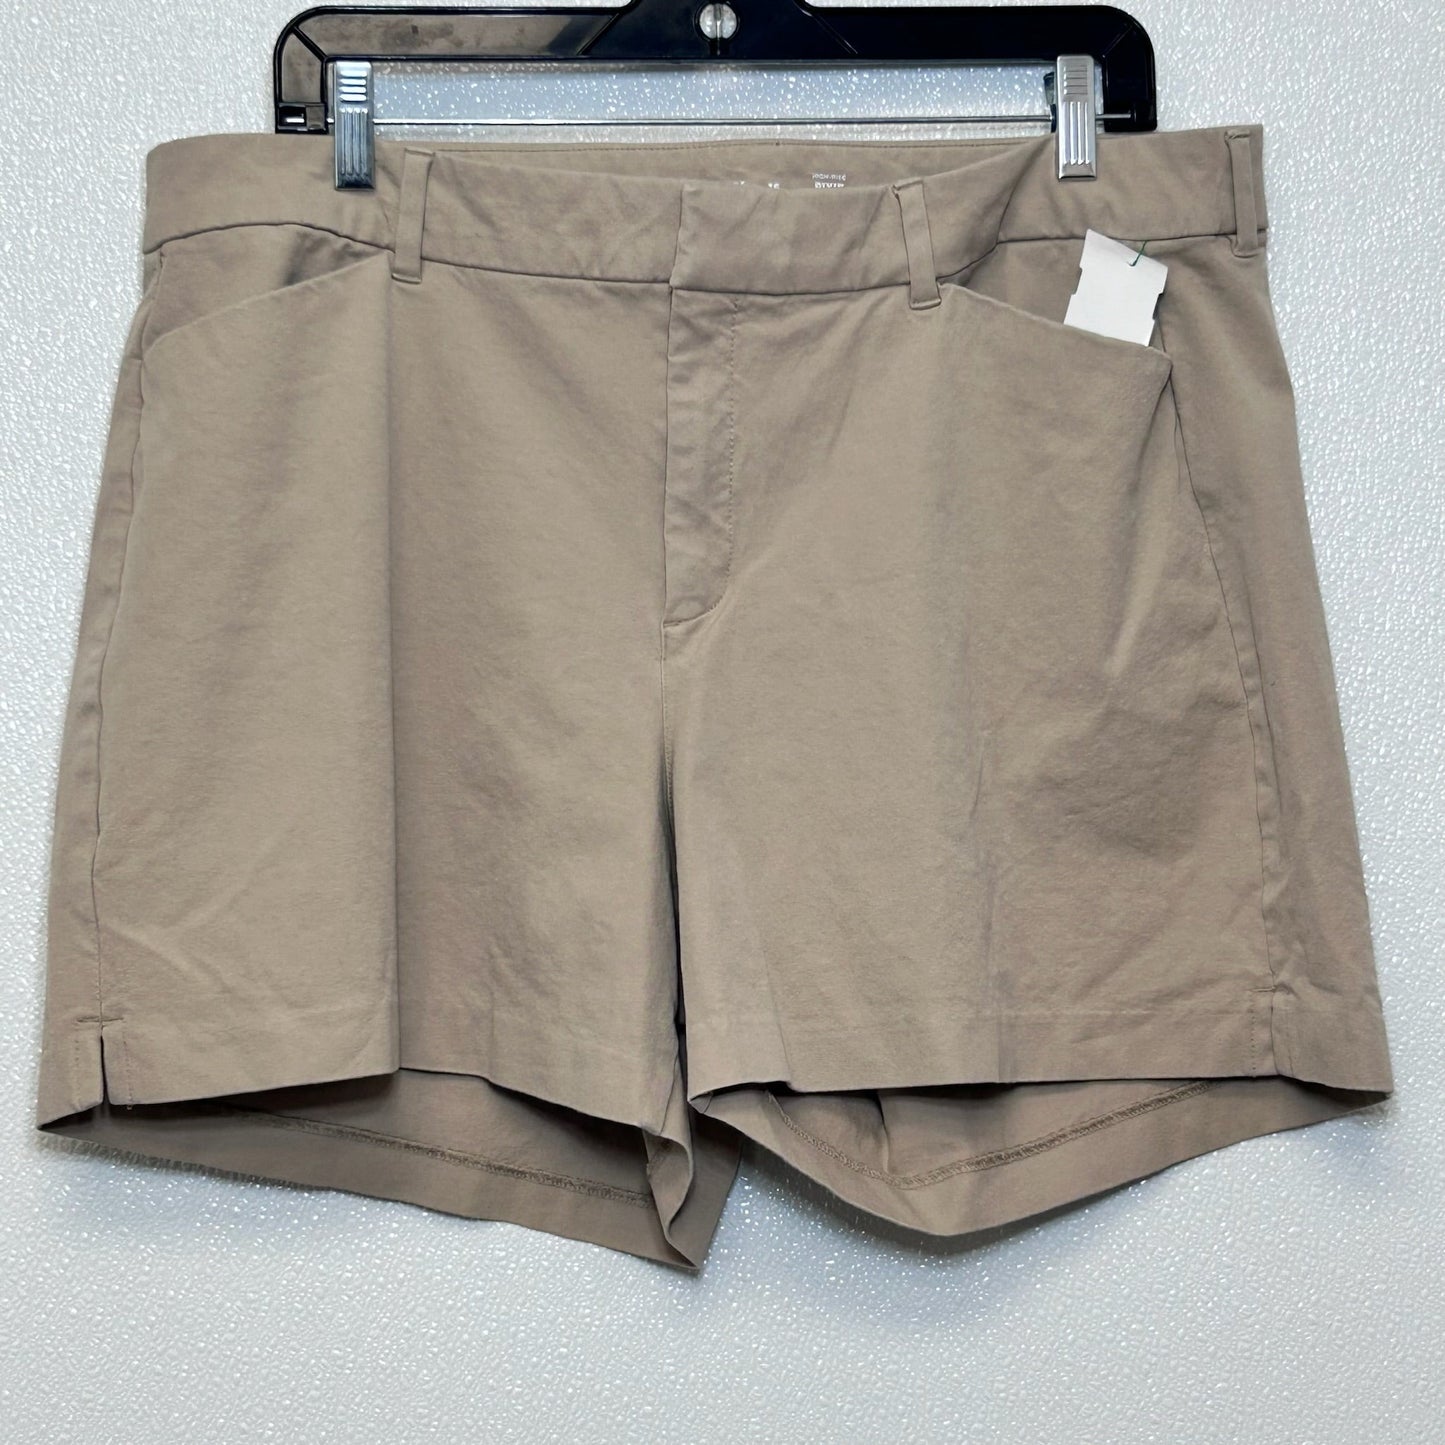 Khaki Shorts Old Navy O, Size 16